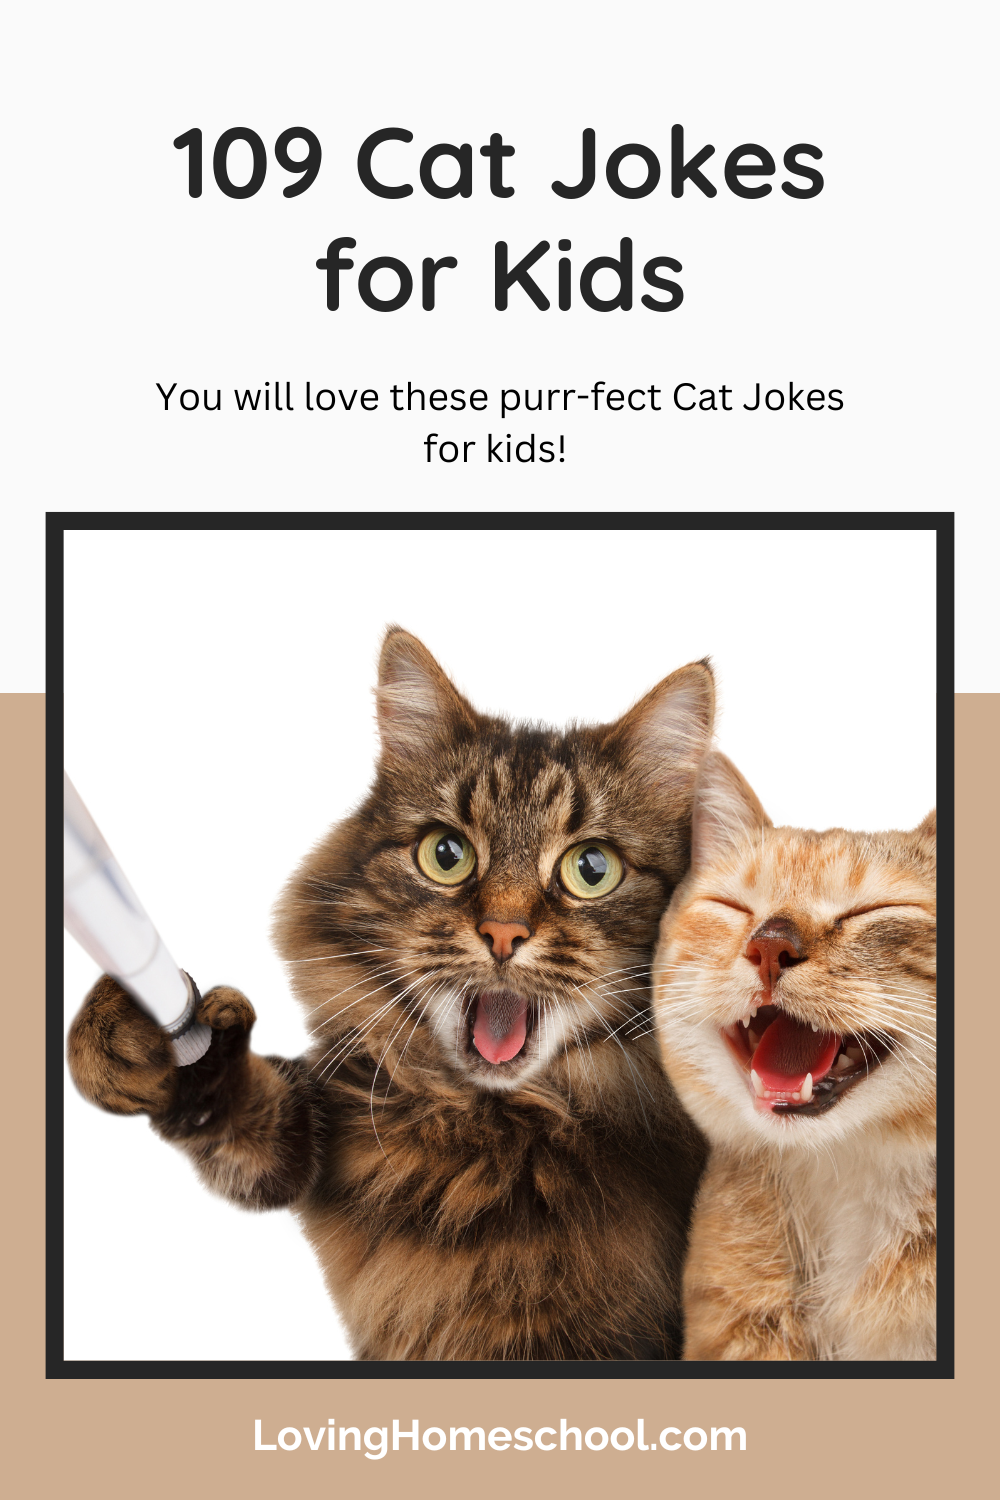 Cat Jokes for Kids Pinterest Pin